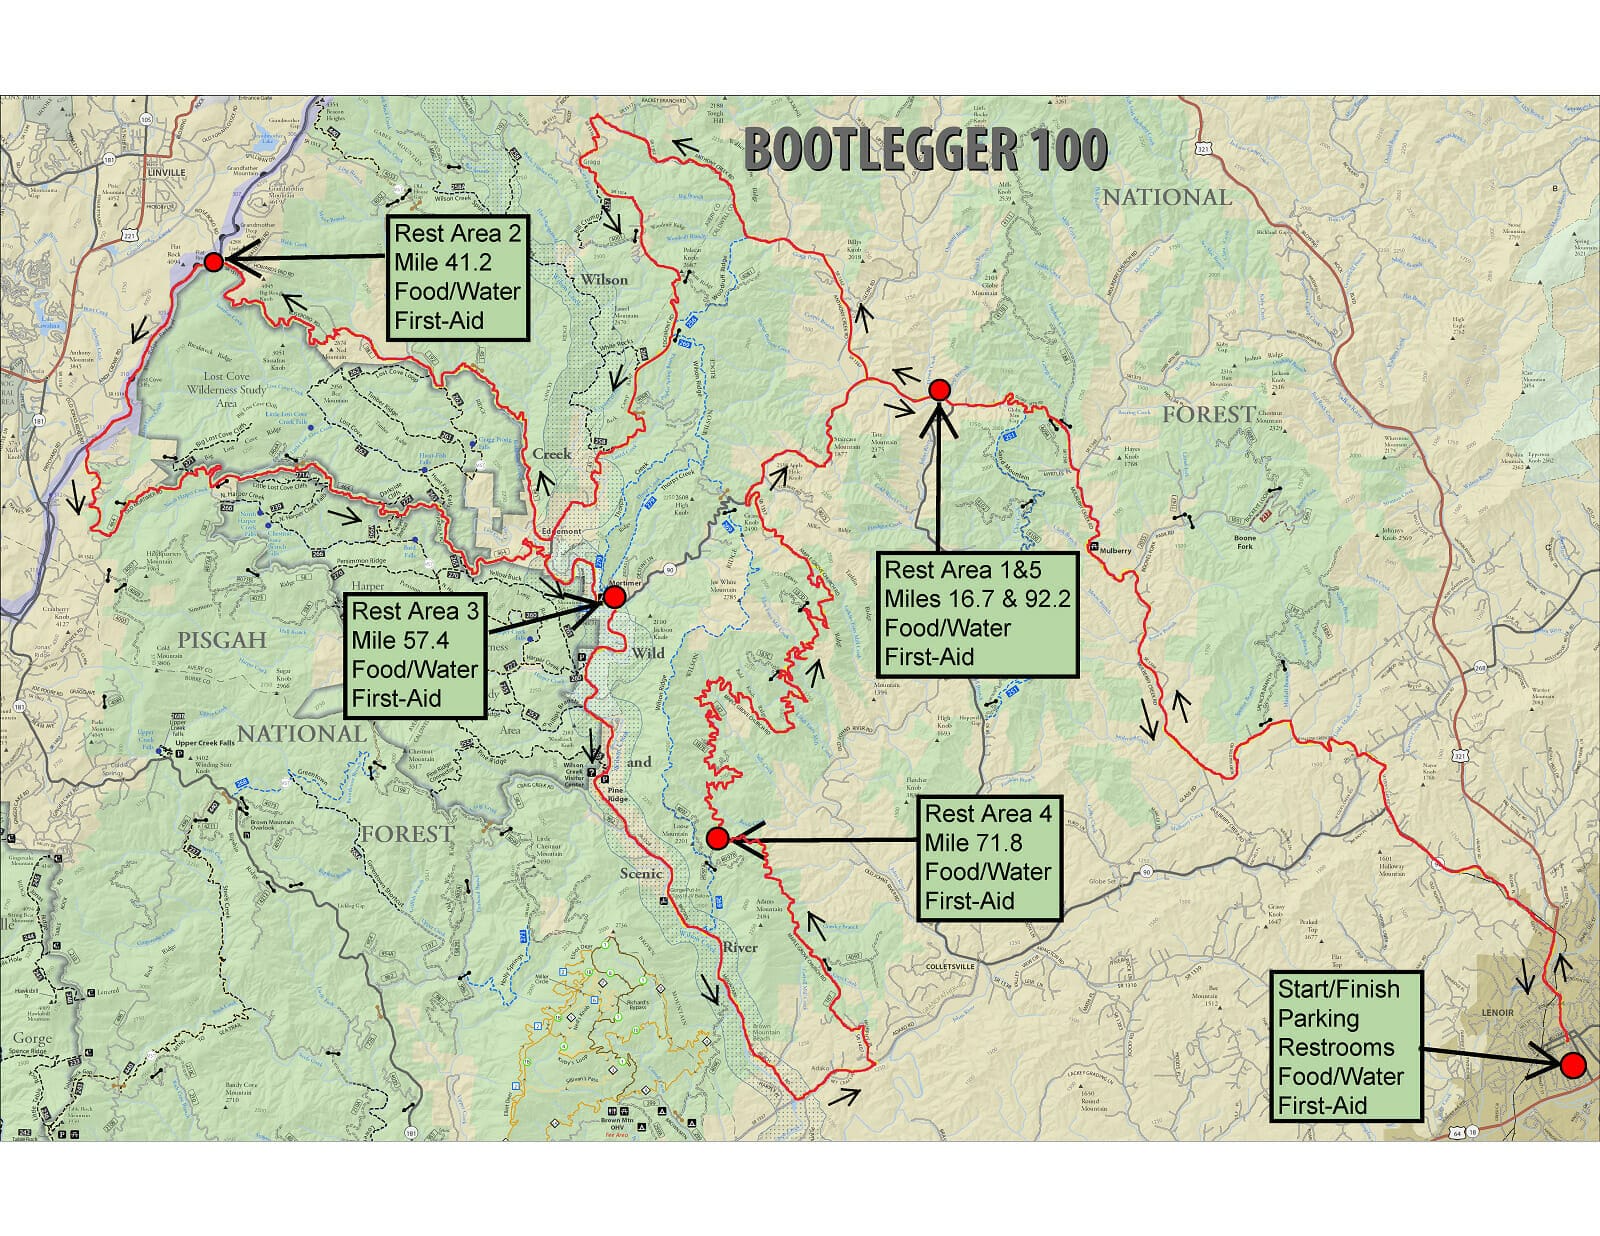 Bootlegger 100 course map